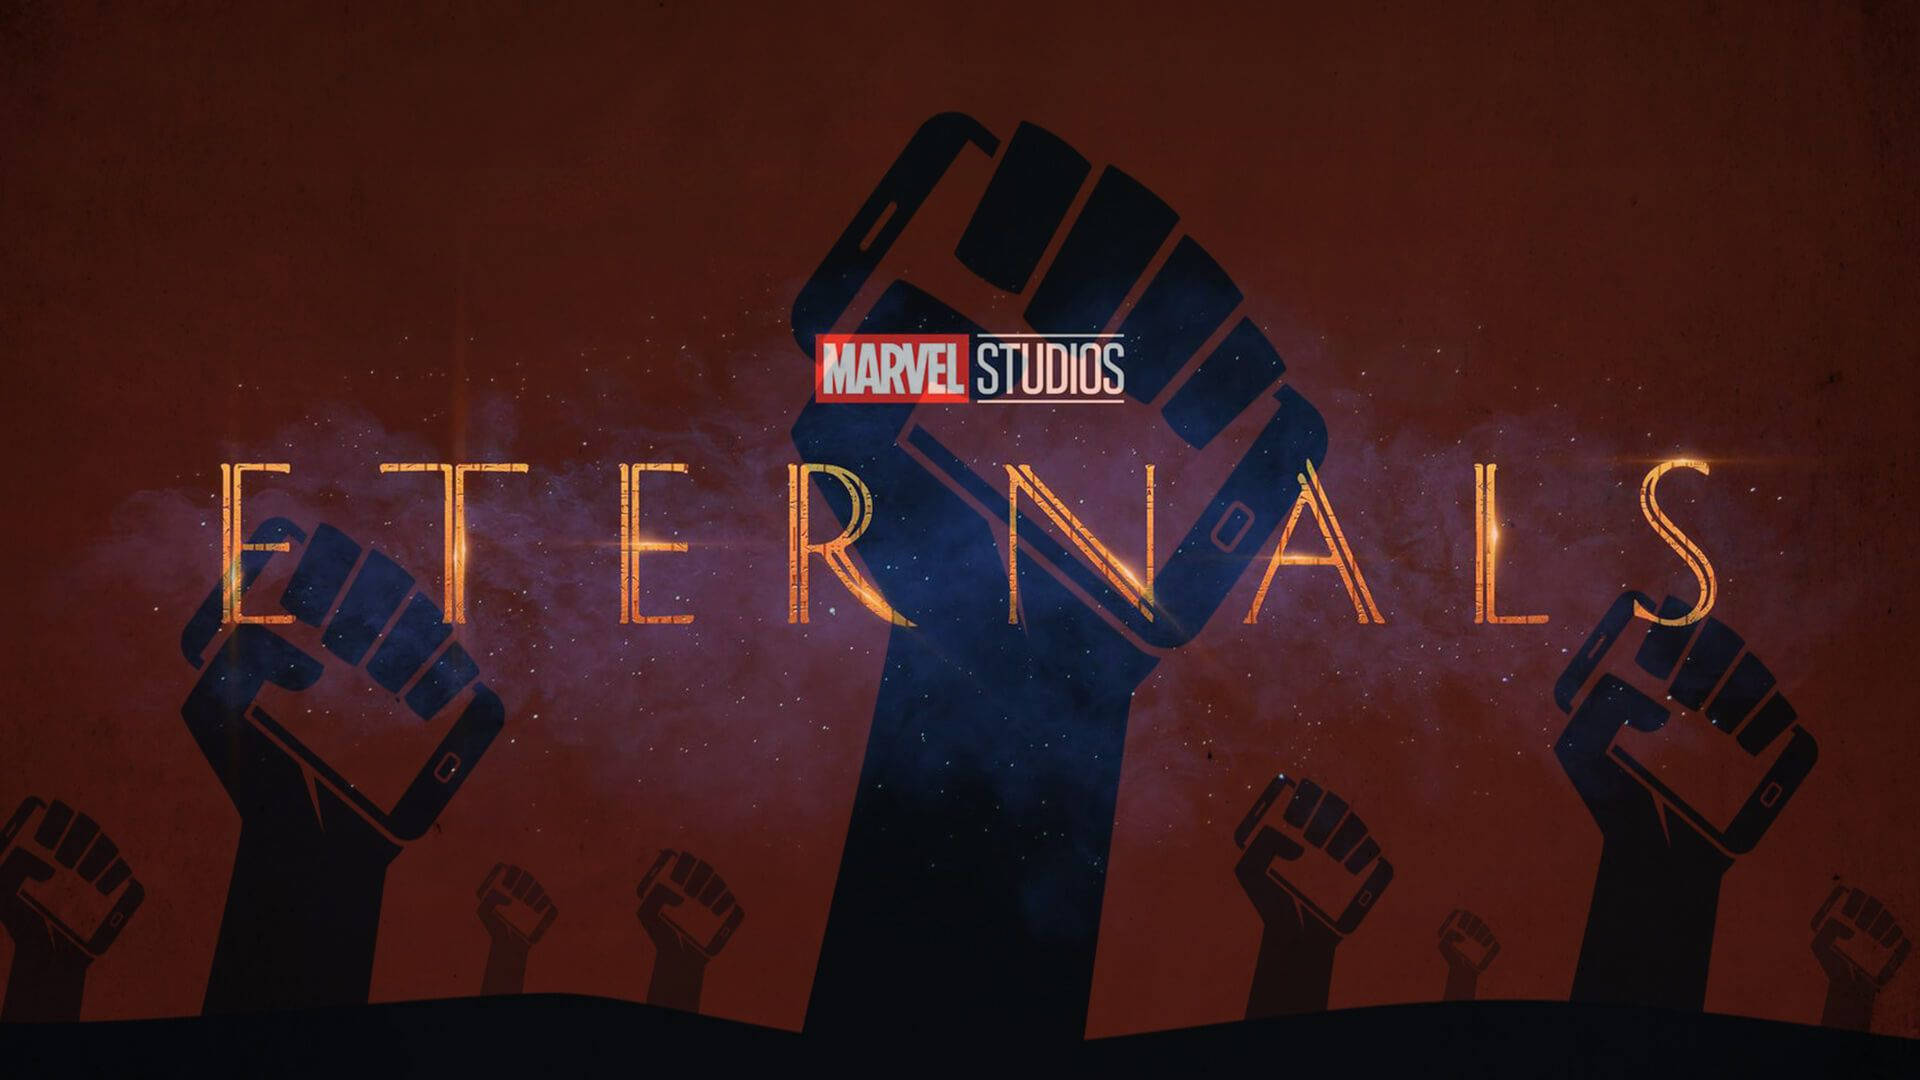 Marvel Studios Eternals Digital Poster Background